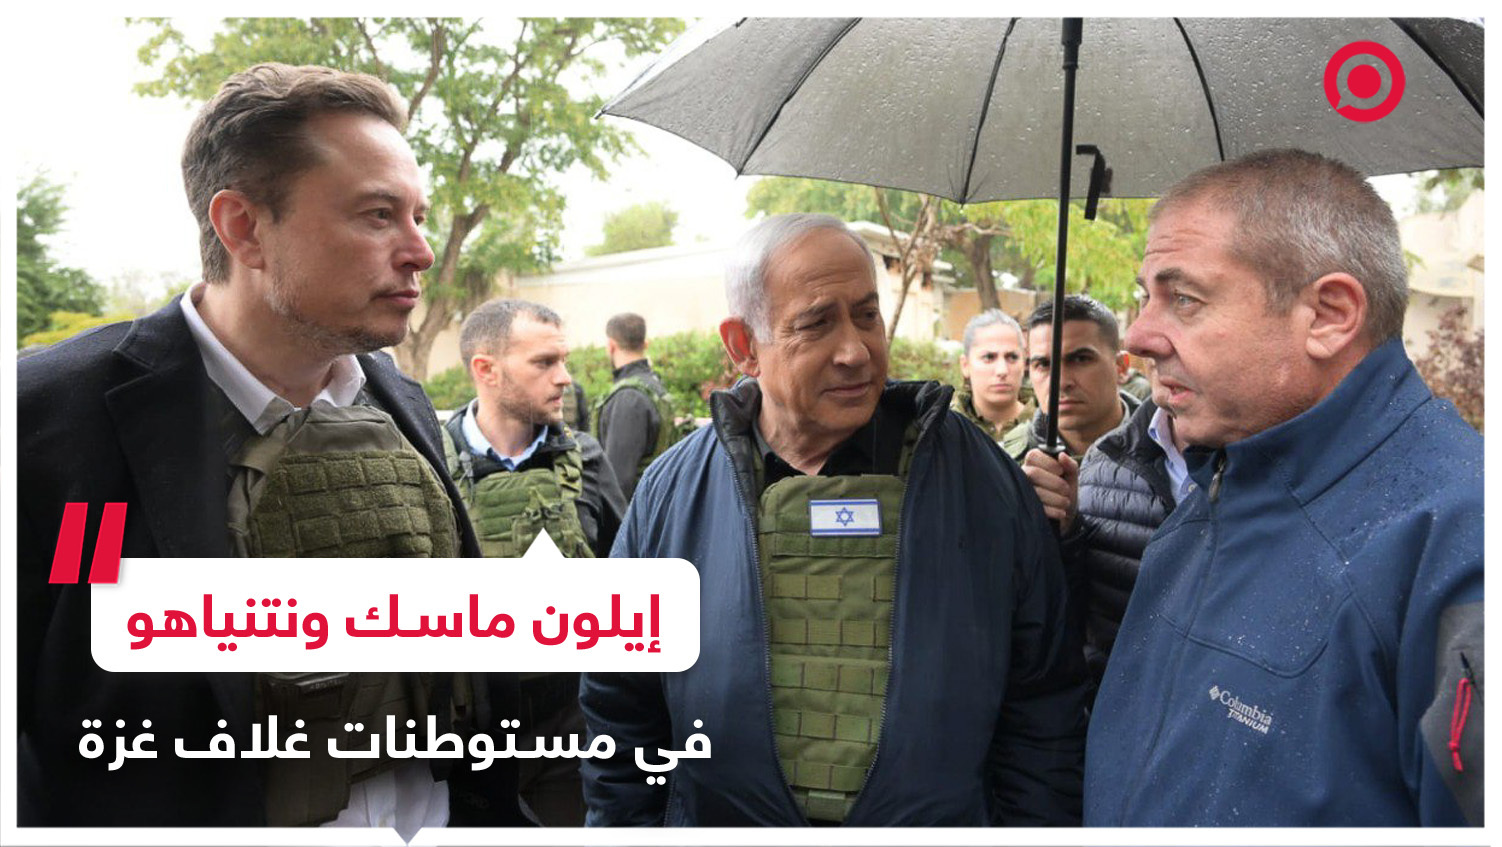 نتنياهو يأخذ إيلون ماسك في جولة داخل مستوطنات غلاف غزة